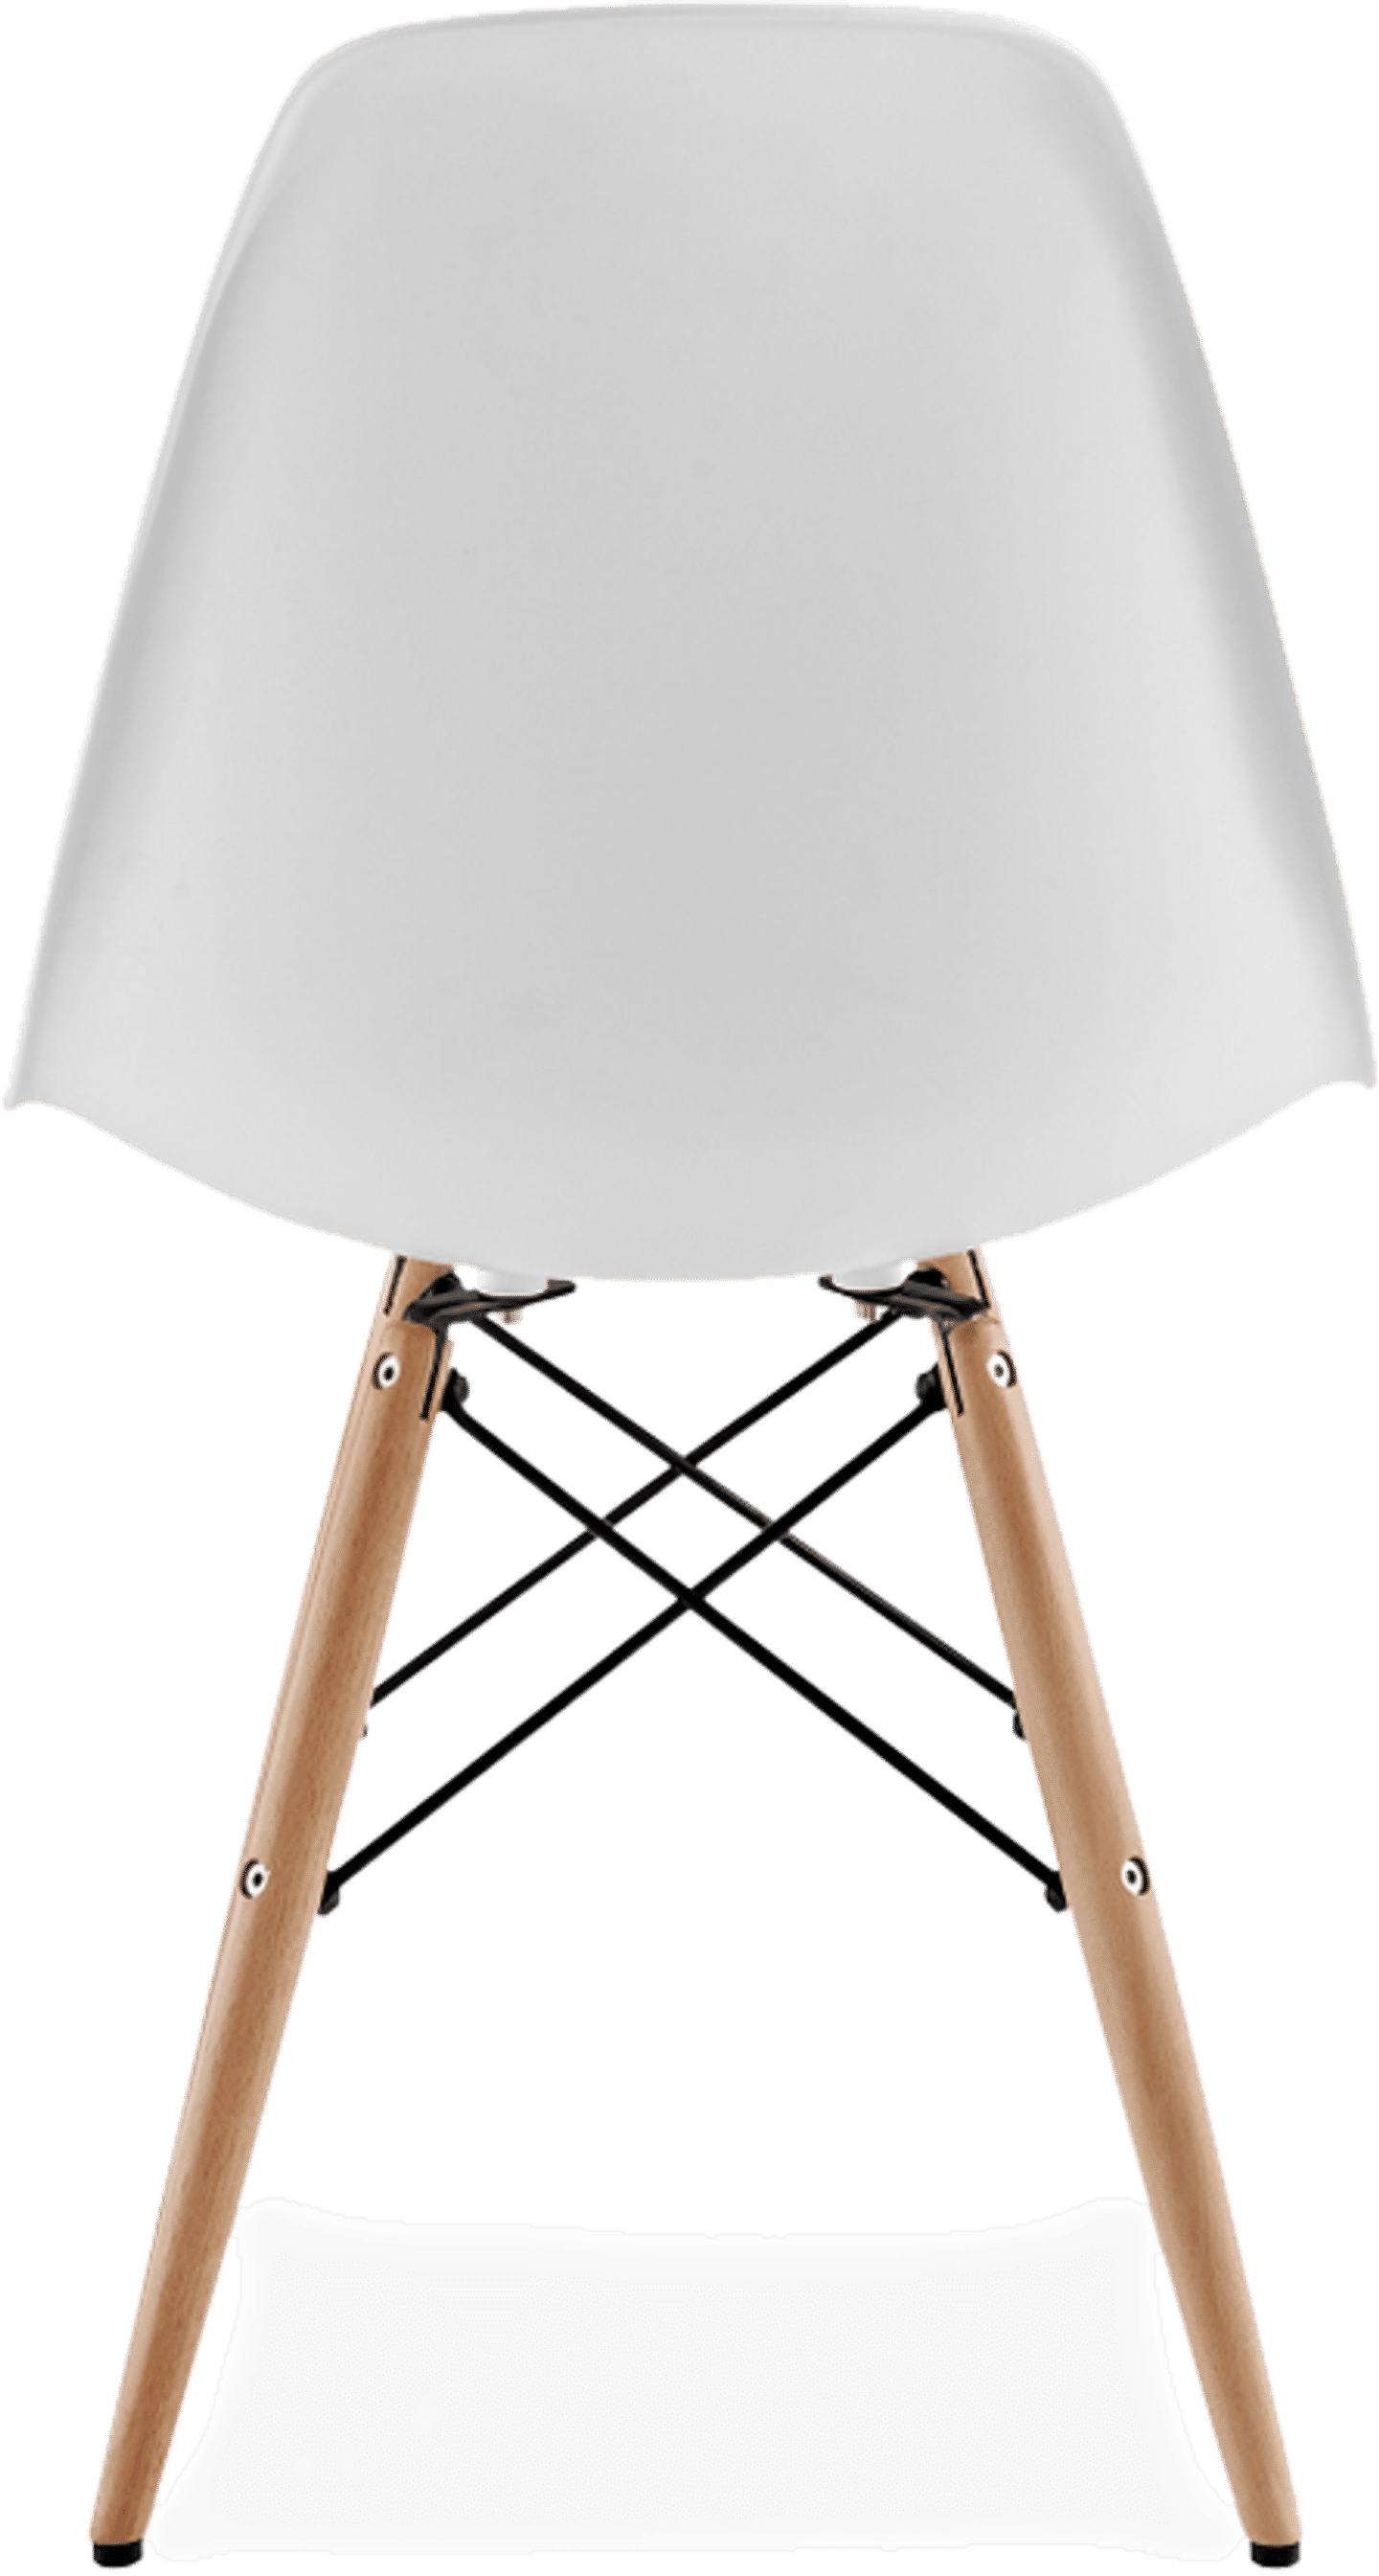 DSW-stoel White/Light Wood image.